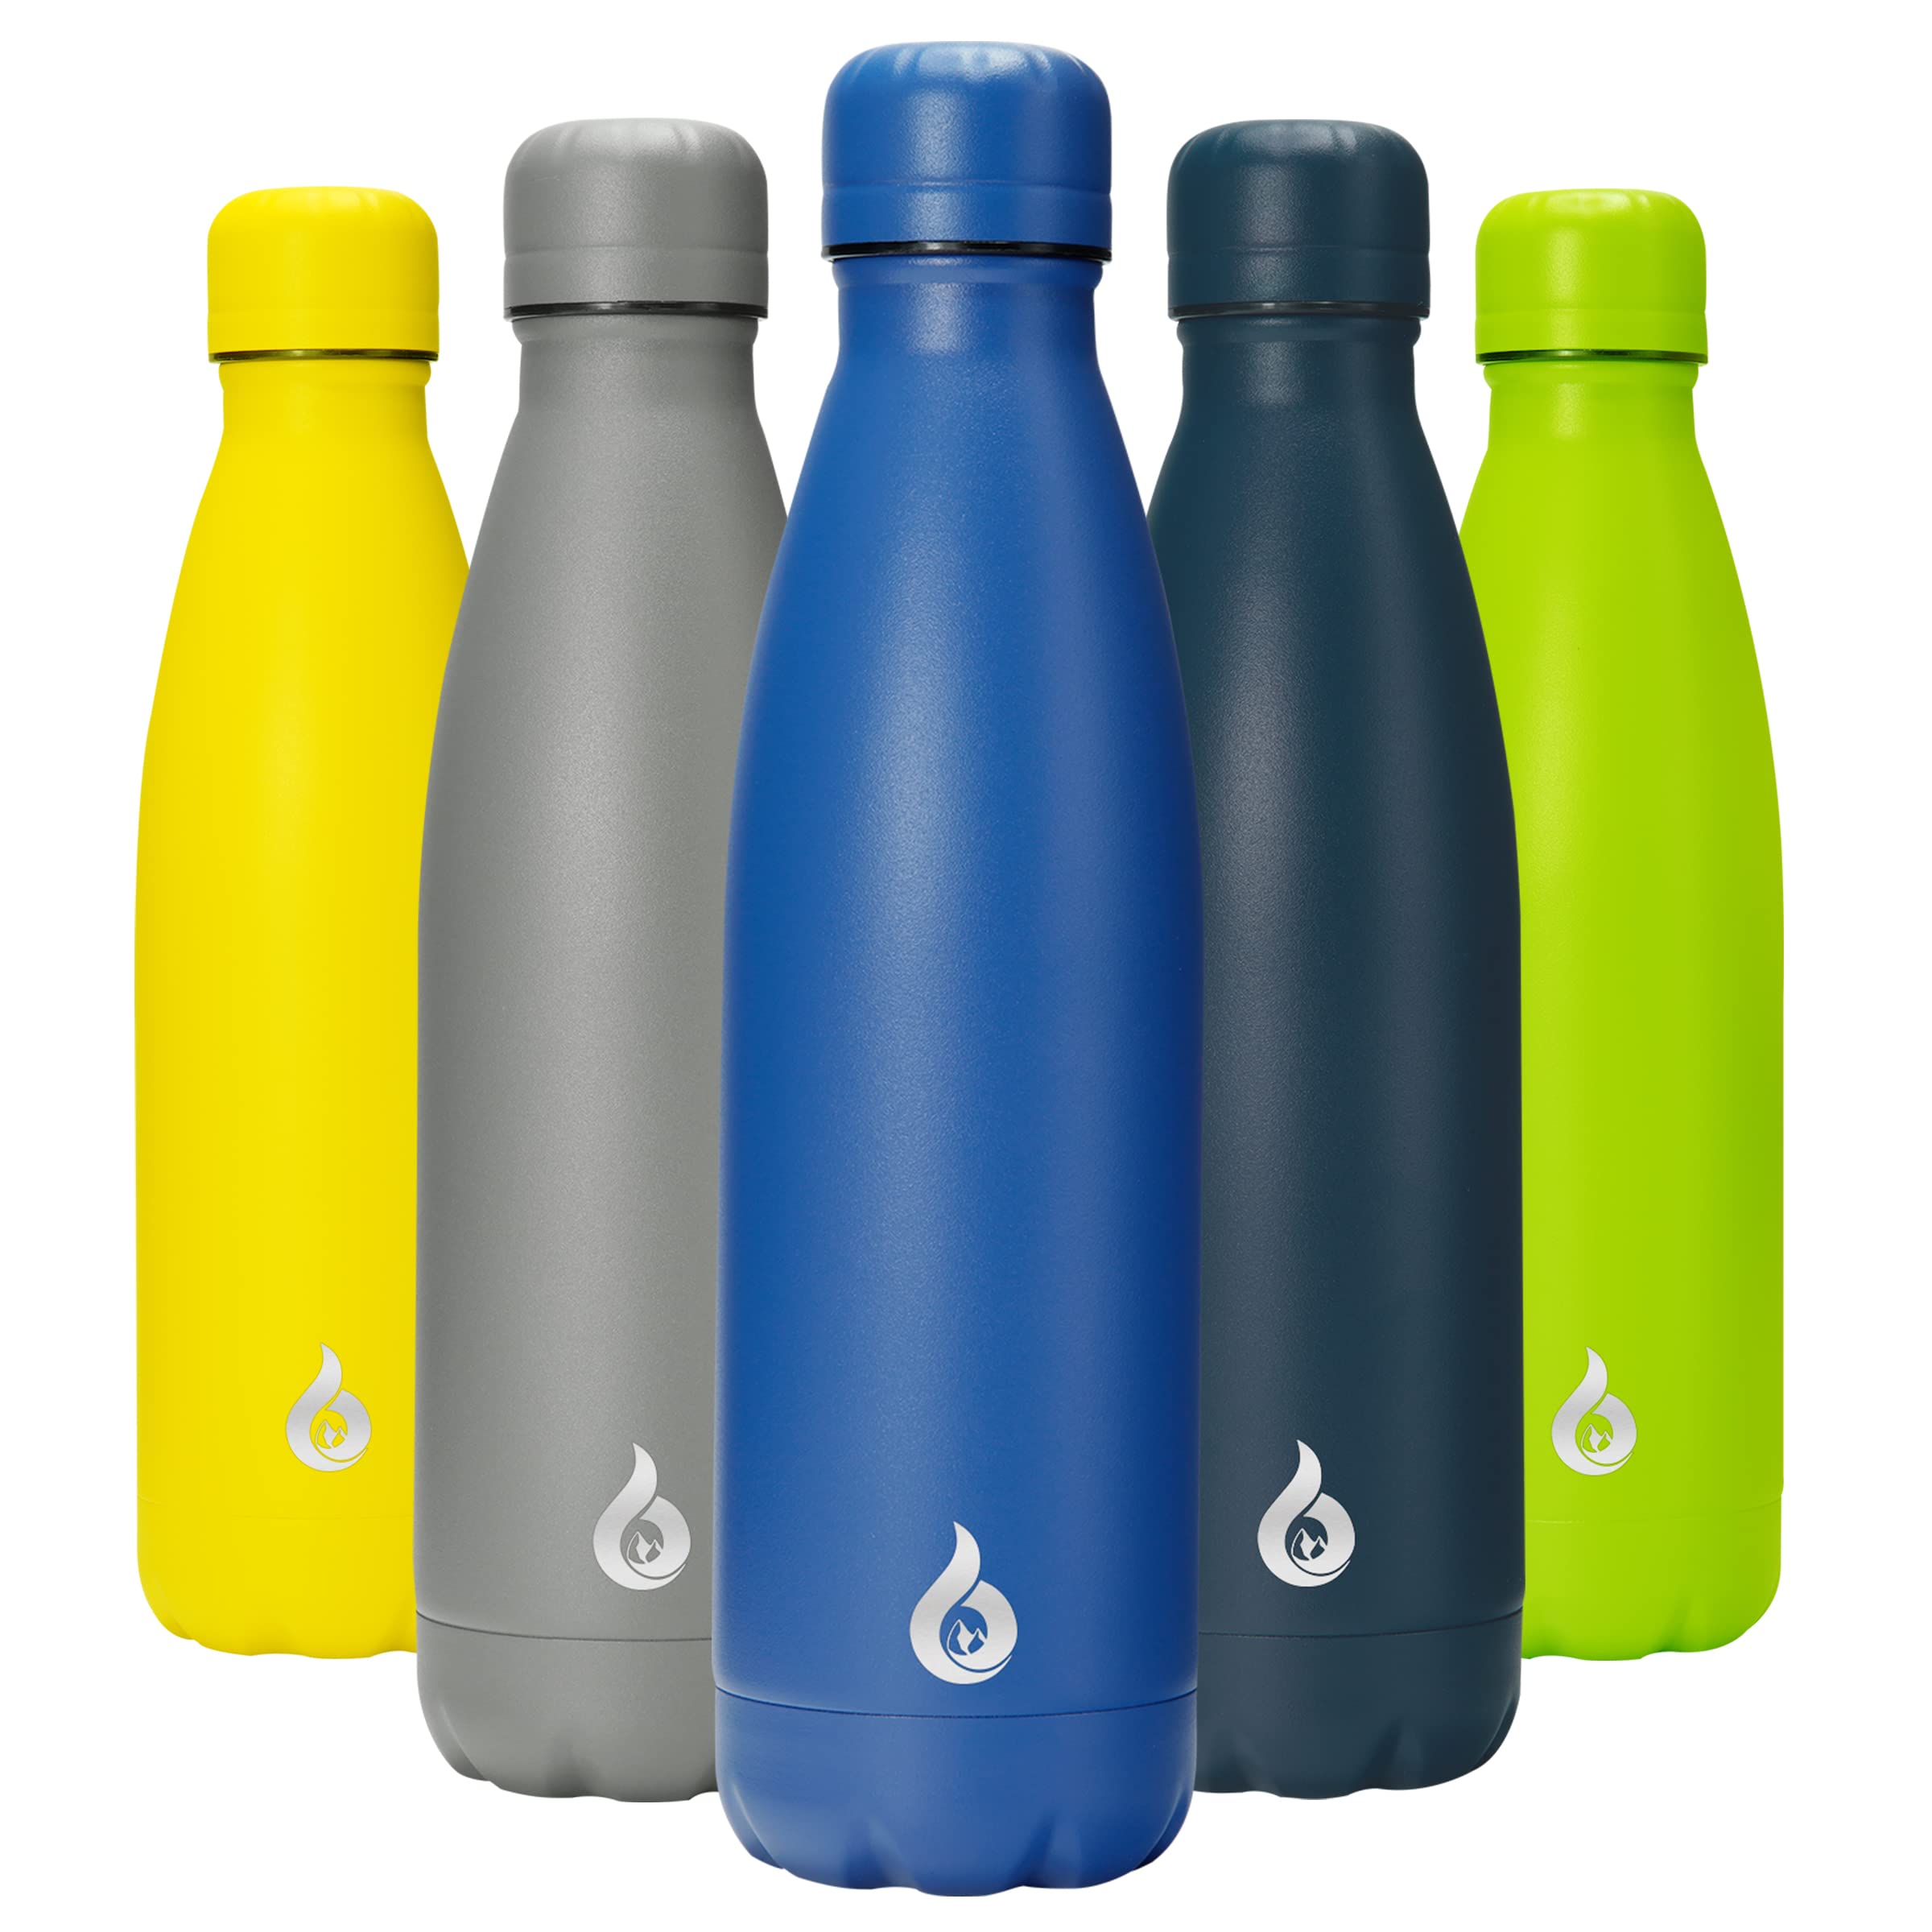 BJPKPK Insulated Water Bottle